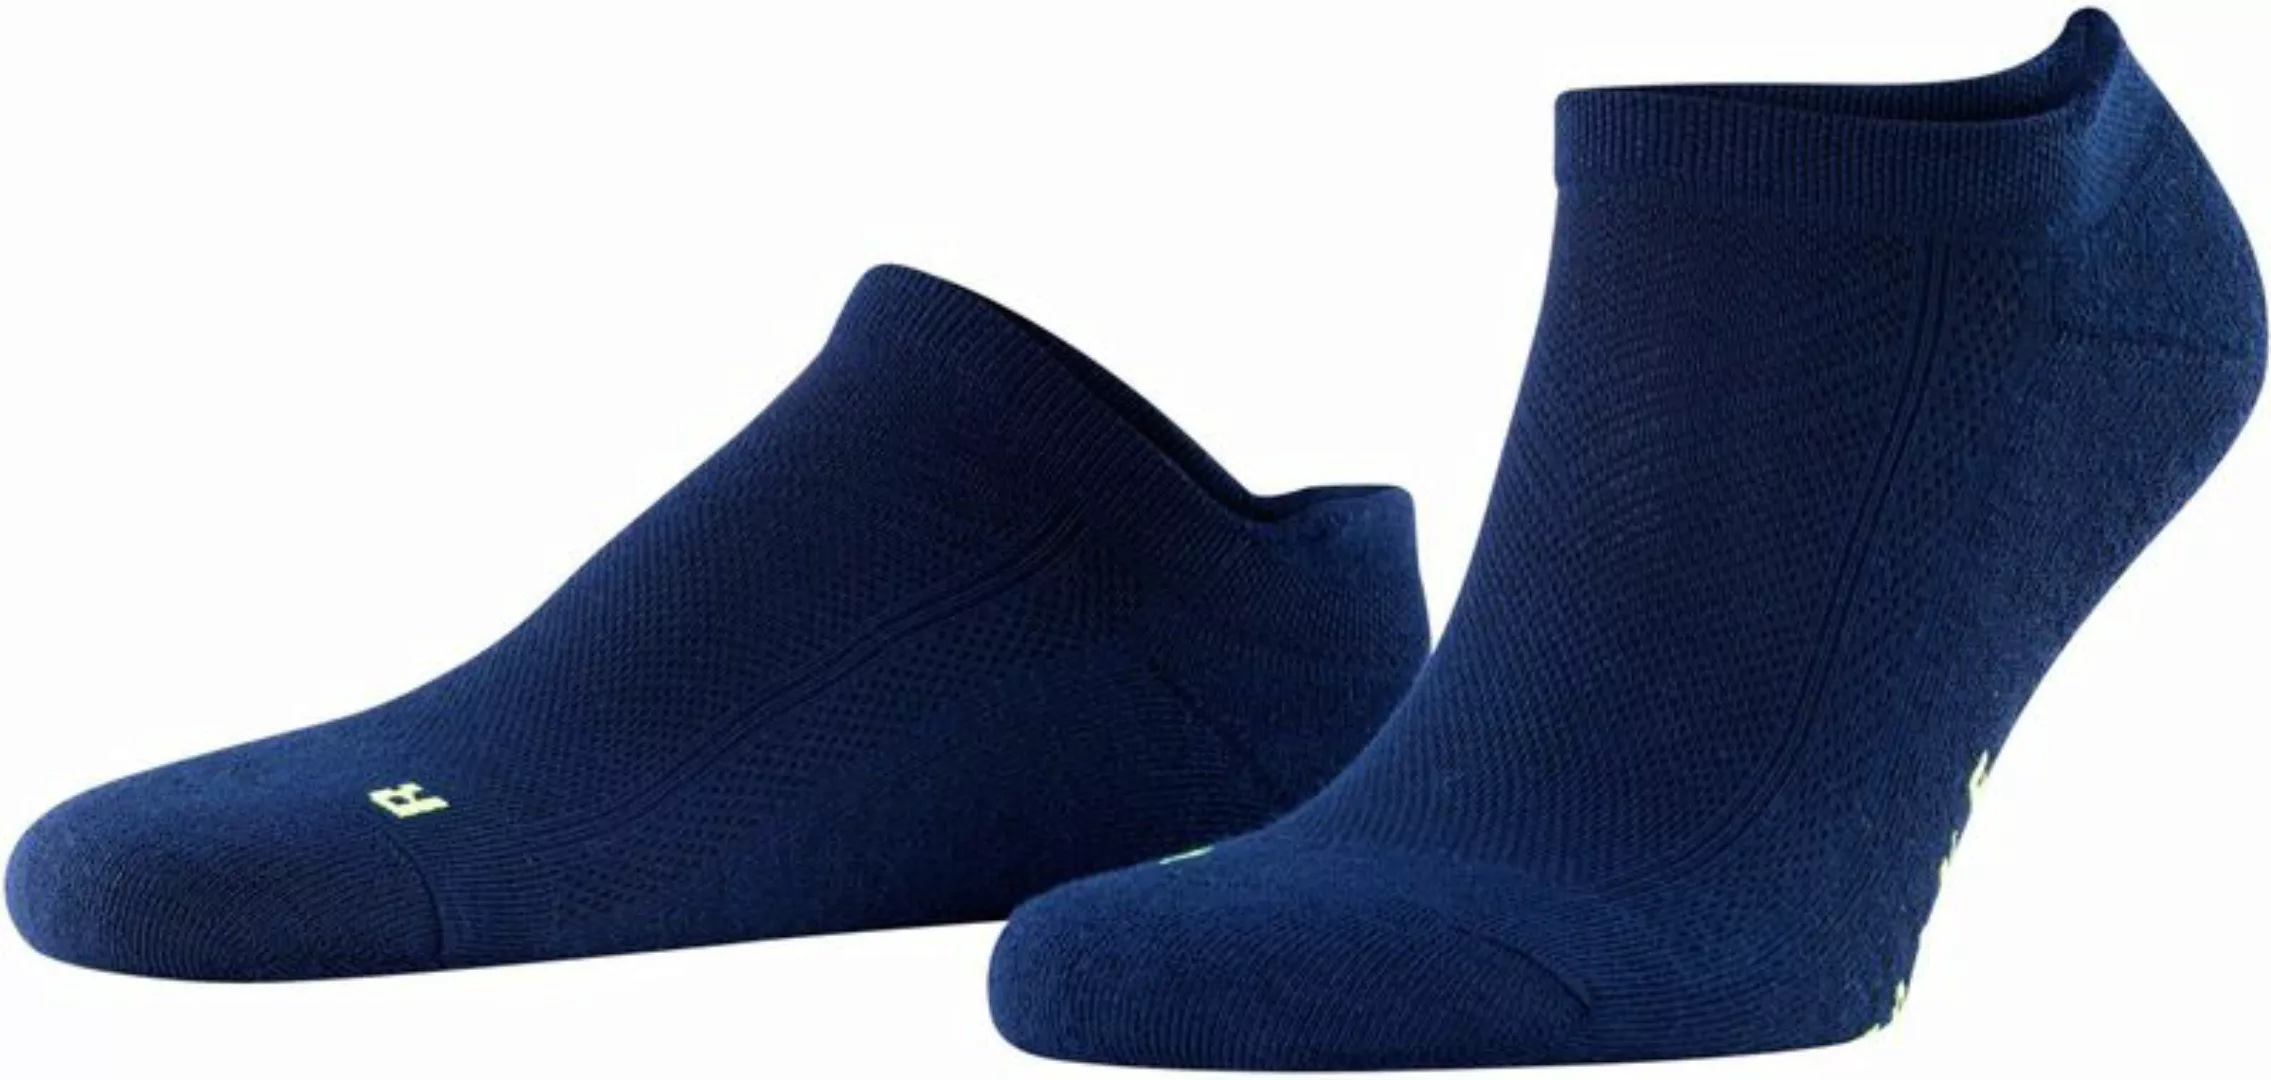 FALKE Cool Kick Trainer Socken Navy - Größe 46-48 günstig online kaufen